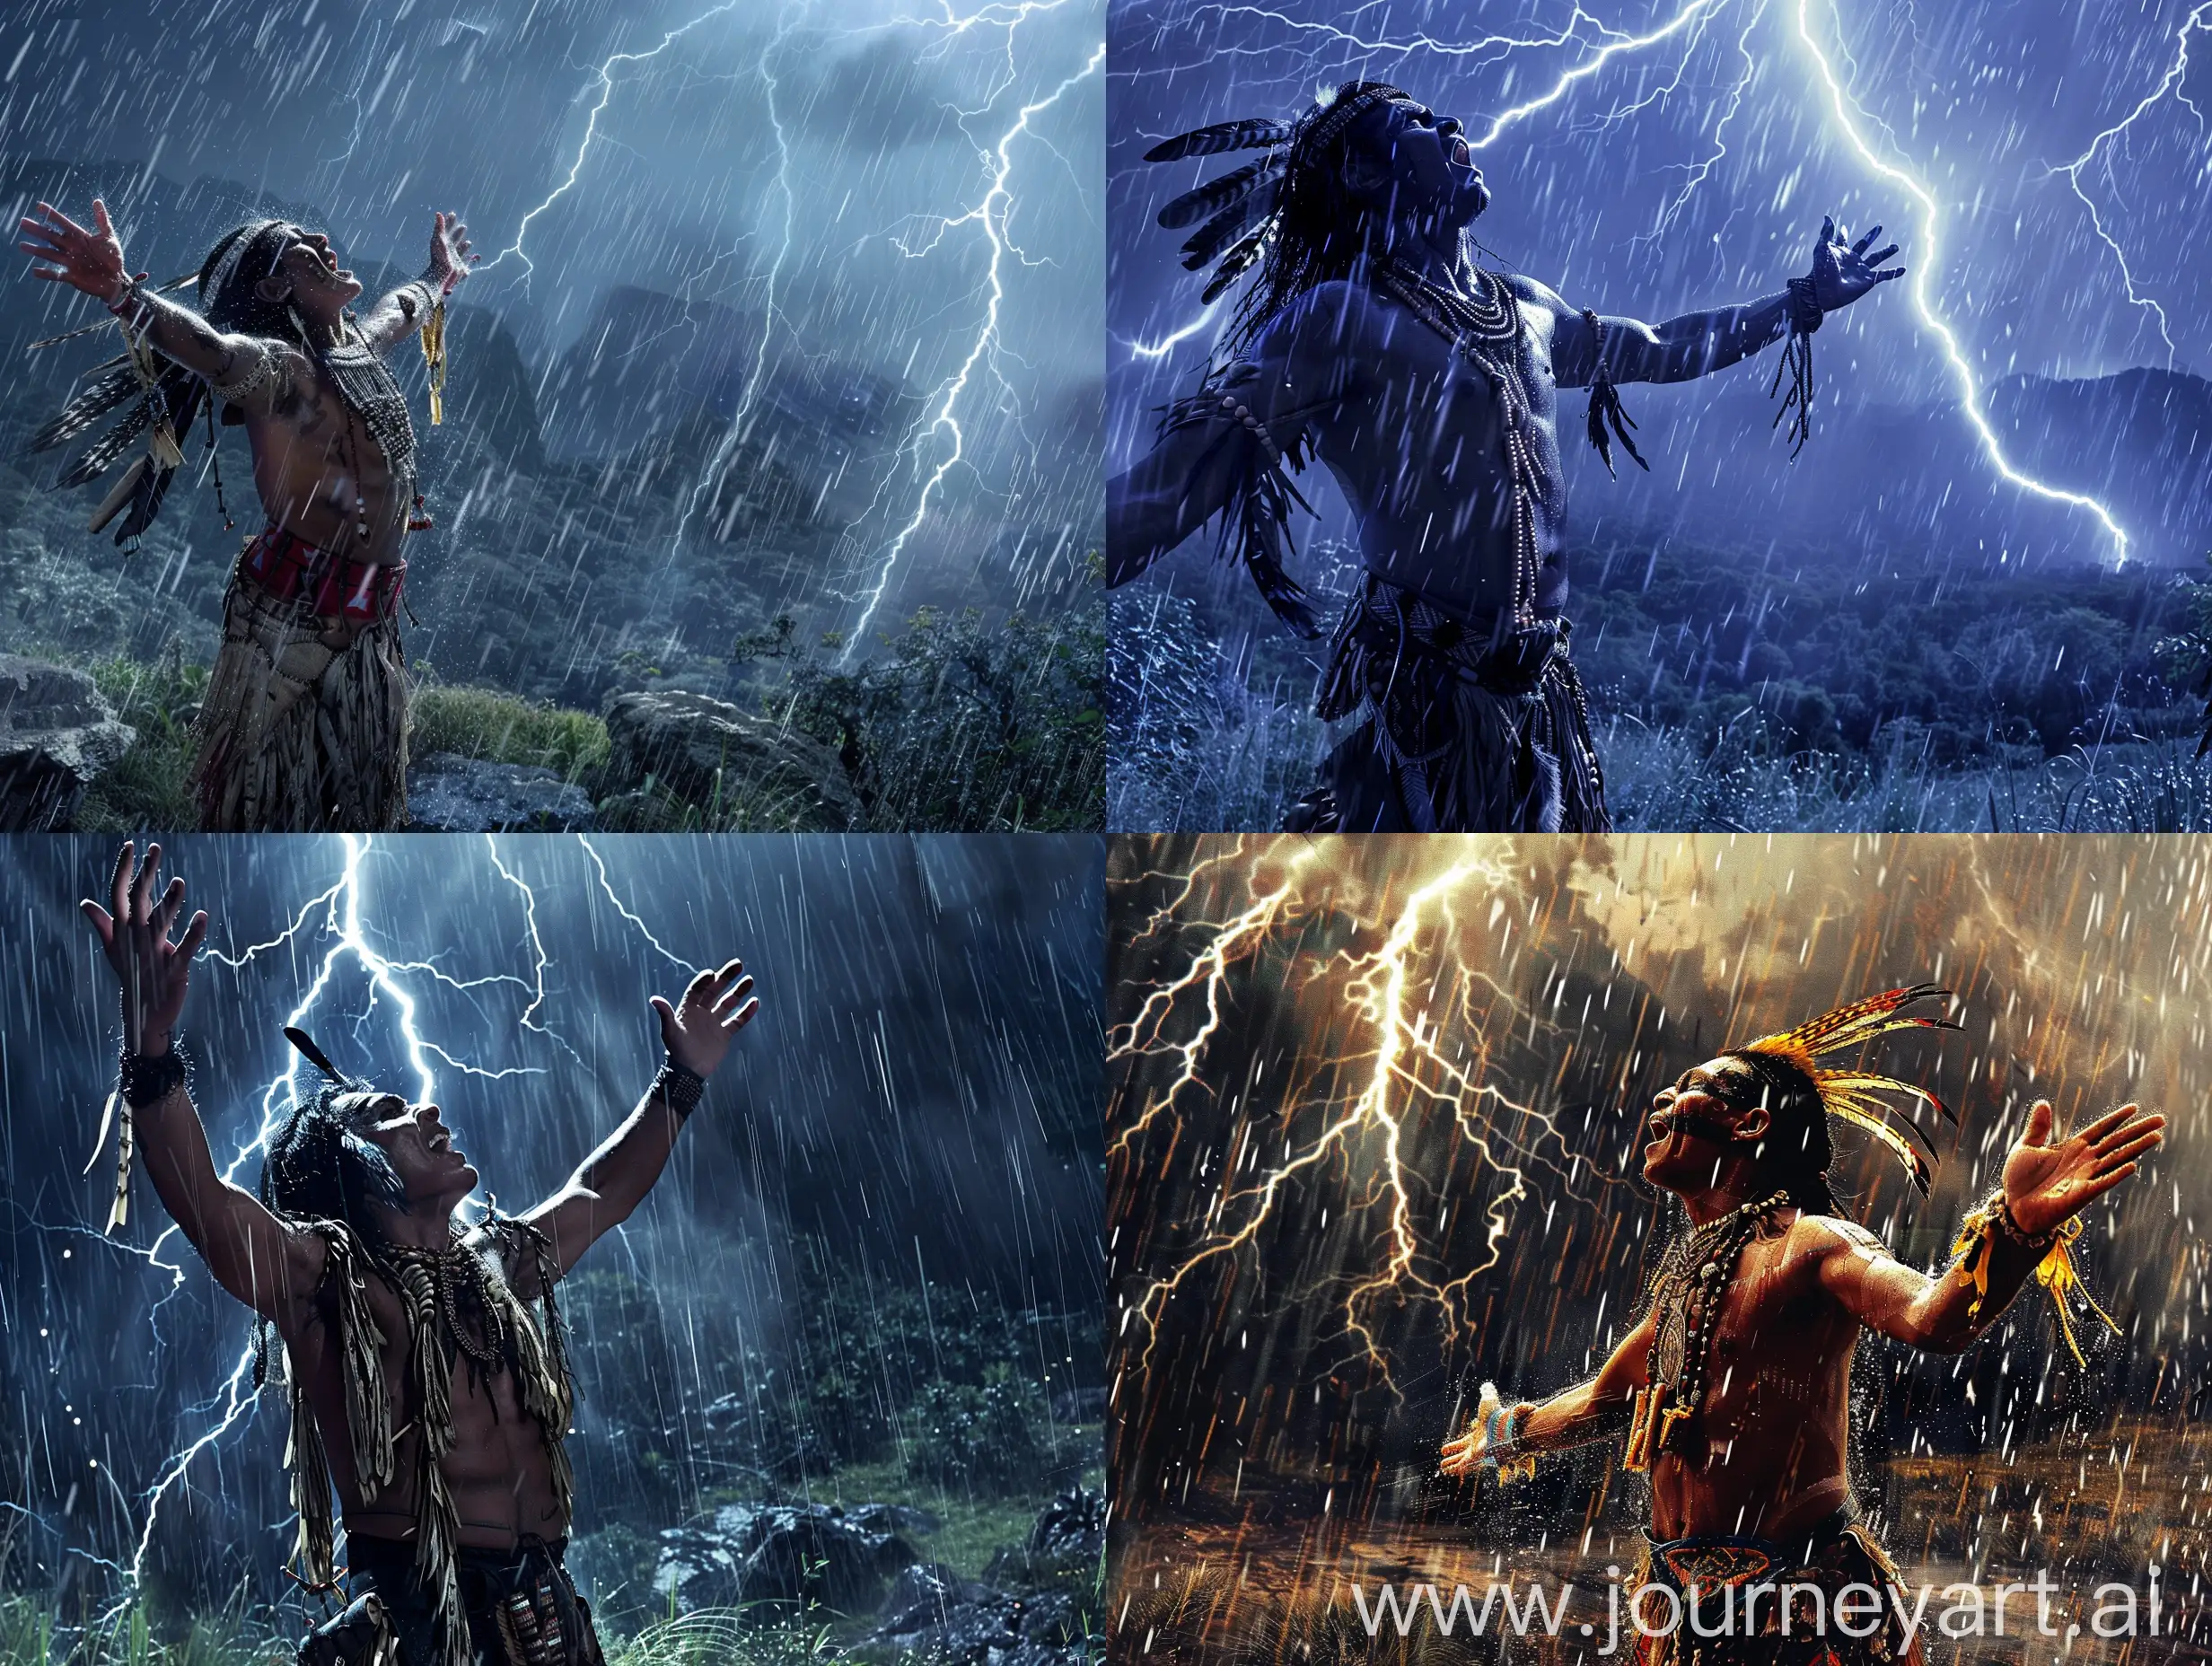 Cinematográfica. Un guerrero nativo sudamericano gritando al cielo con sus brazos extendidos, en un valle, de noche, llueve mucho, hay relámpagos.